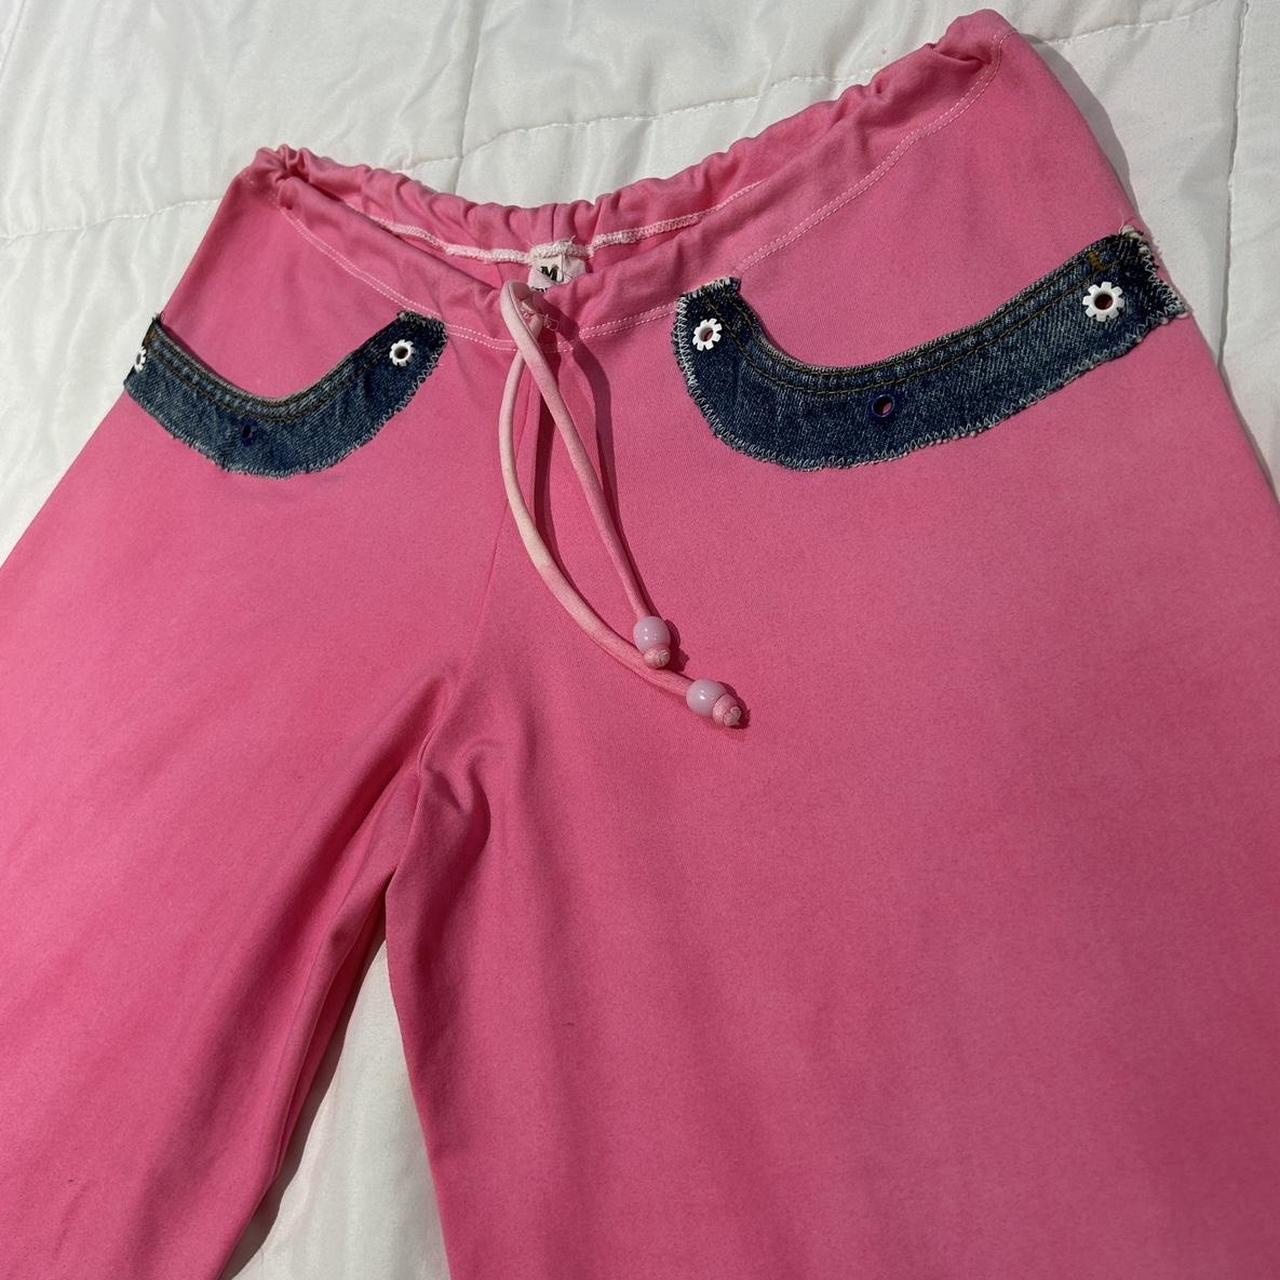 Vintage 2000s hot pink yoga pants w/ denim details - Depop